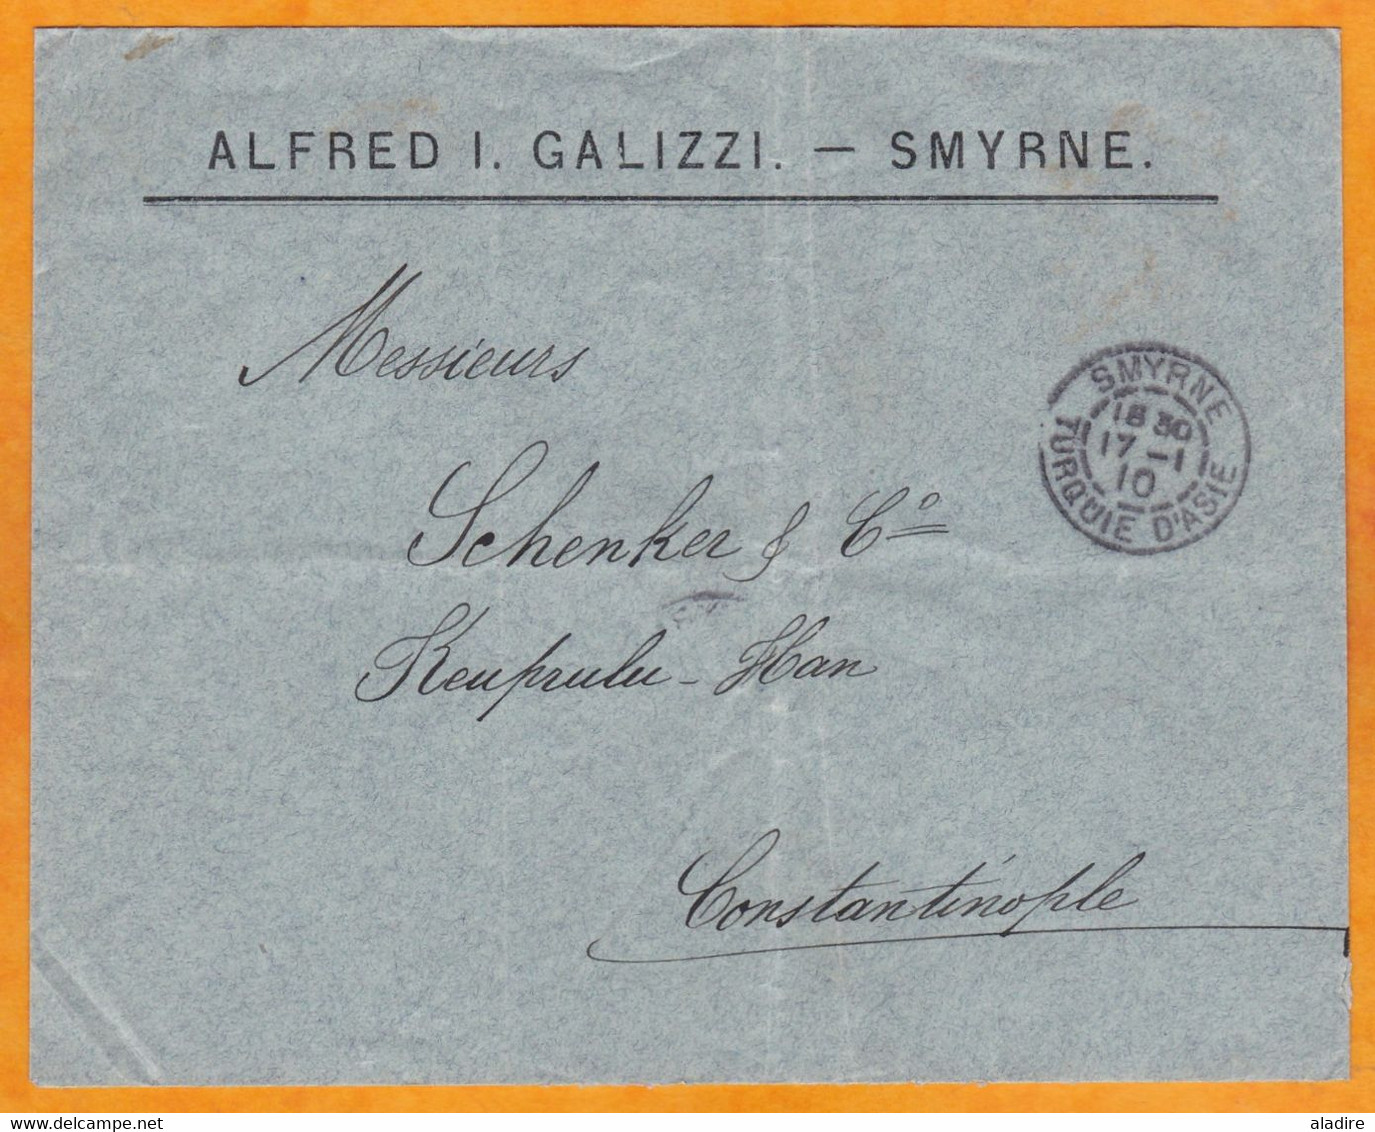 1910 - BFE - 10 C Mouchon Sur Enveloppe De Smyrne Vers Constantinople - Cad Arrivée - Lettres & Documents